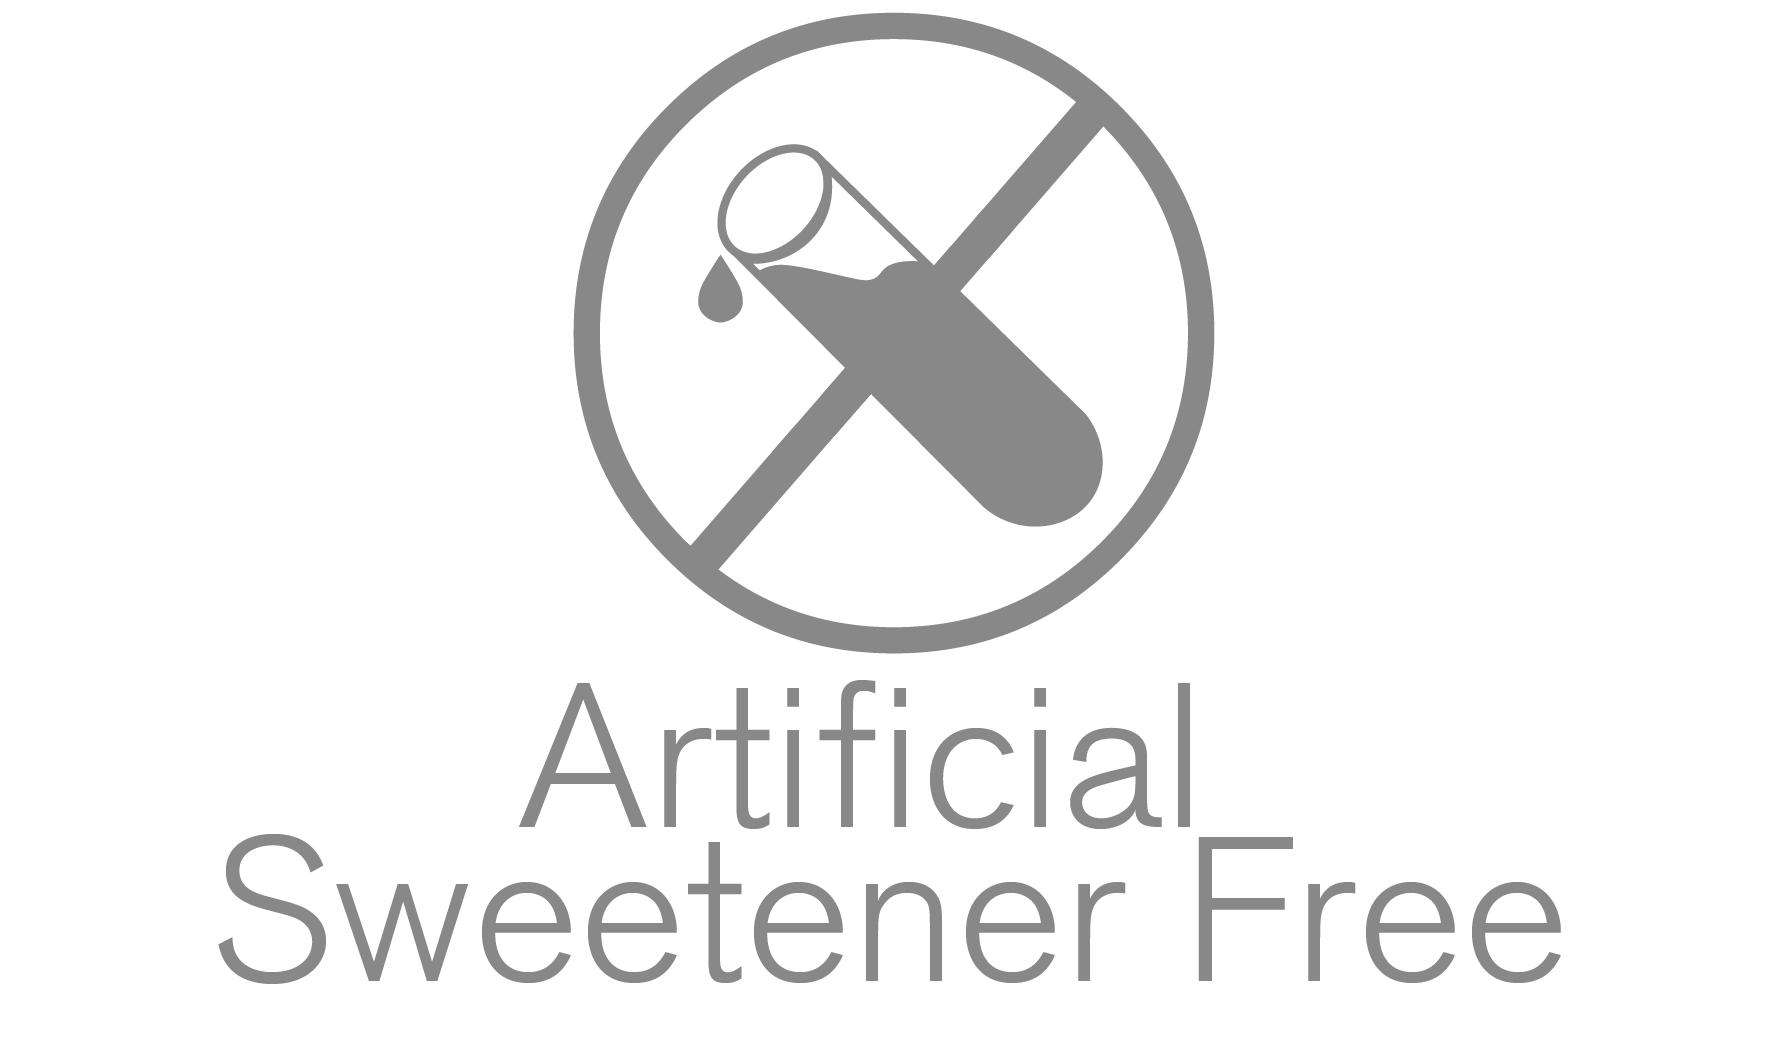 Artificial Sweetner Free